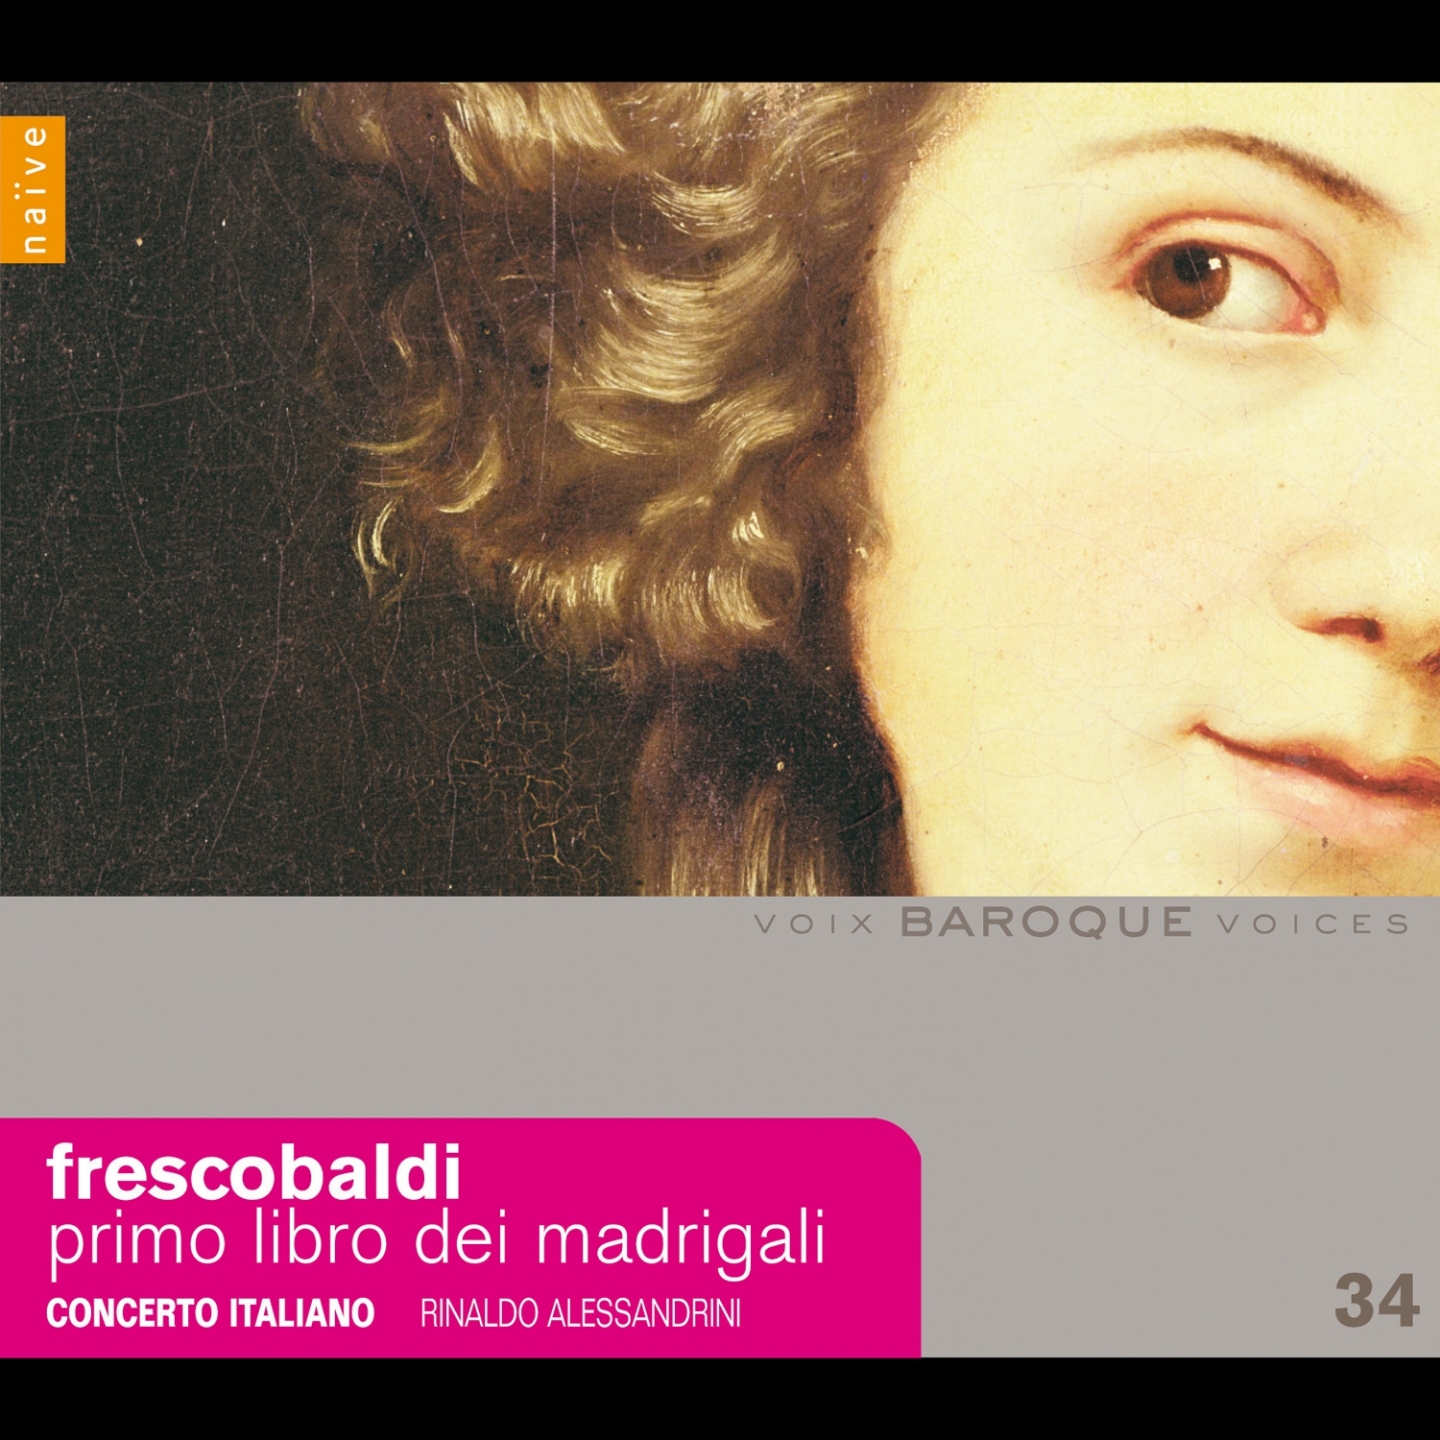 Frescobaldi: Primo libro dei madrigali